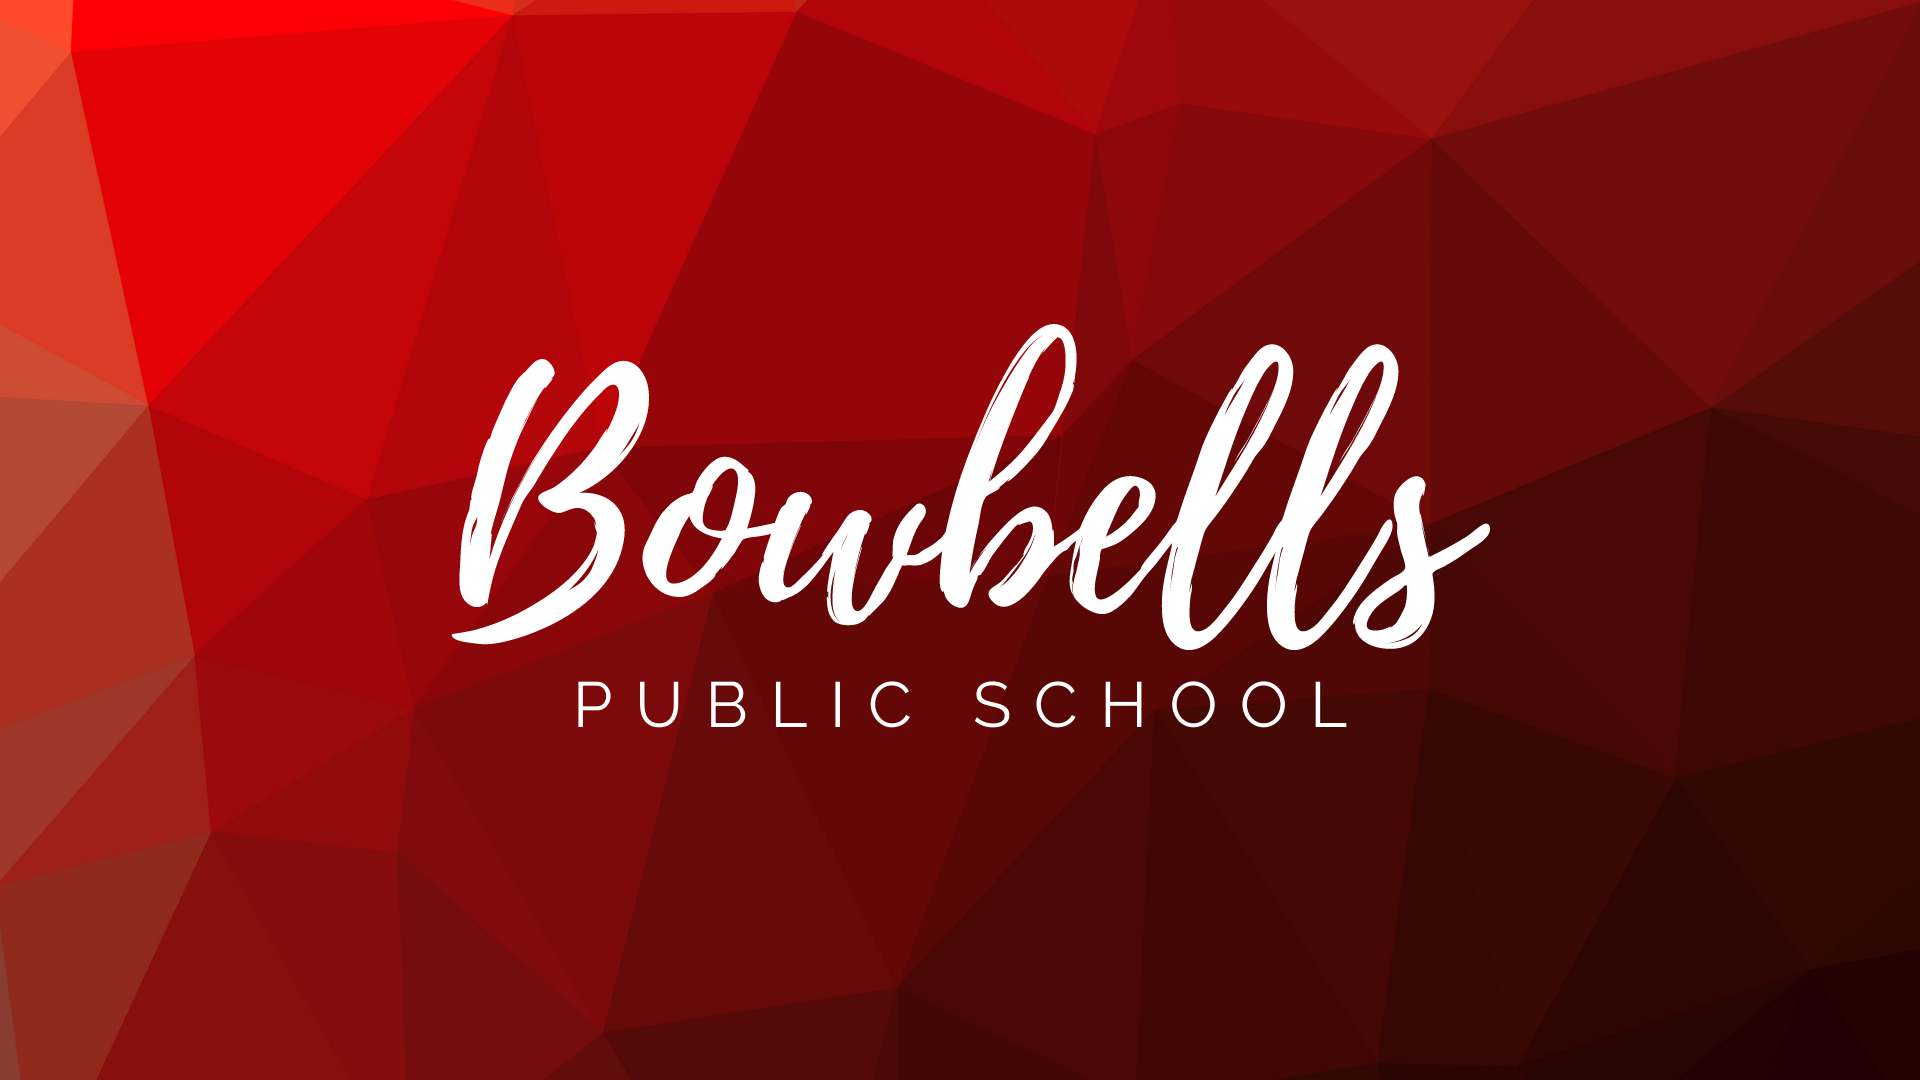 Bowbells Public School